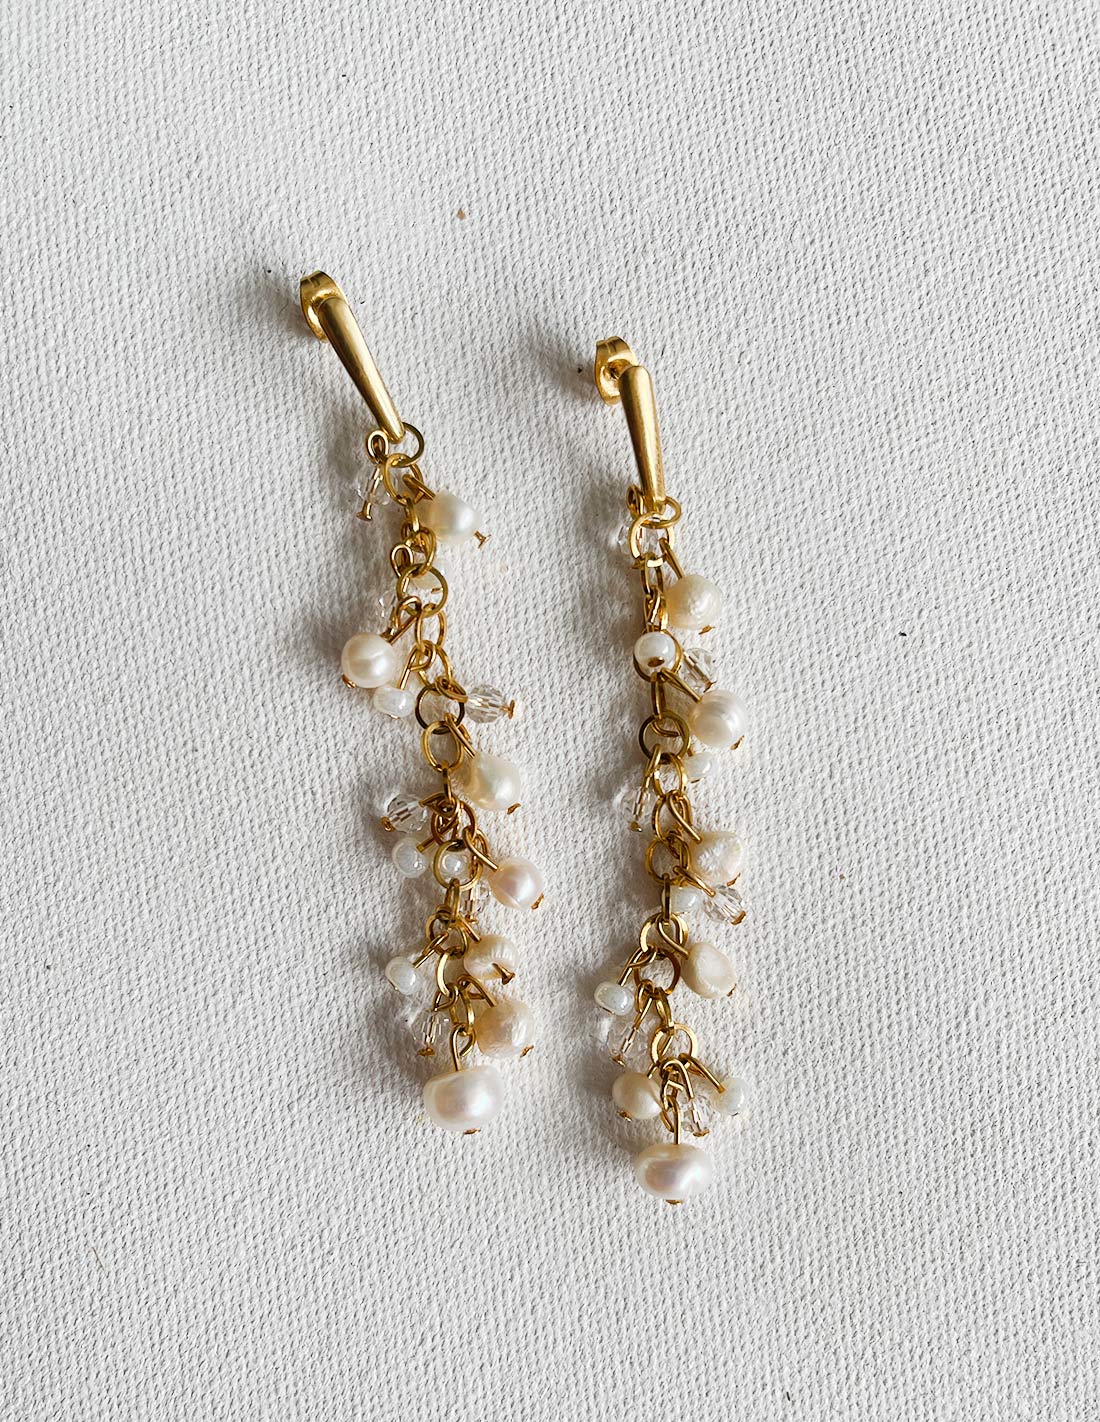 Angelical Earring Golden Pearl - Earring - Entreaguas Wearable Art